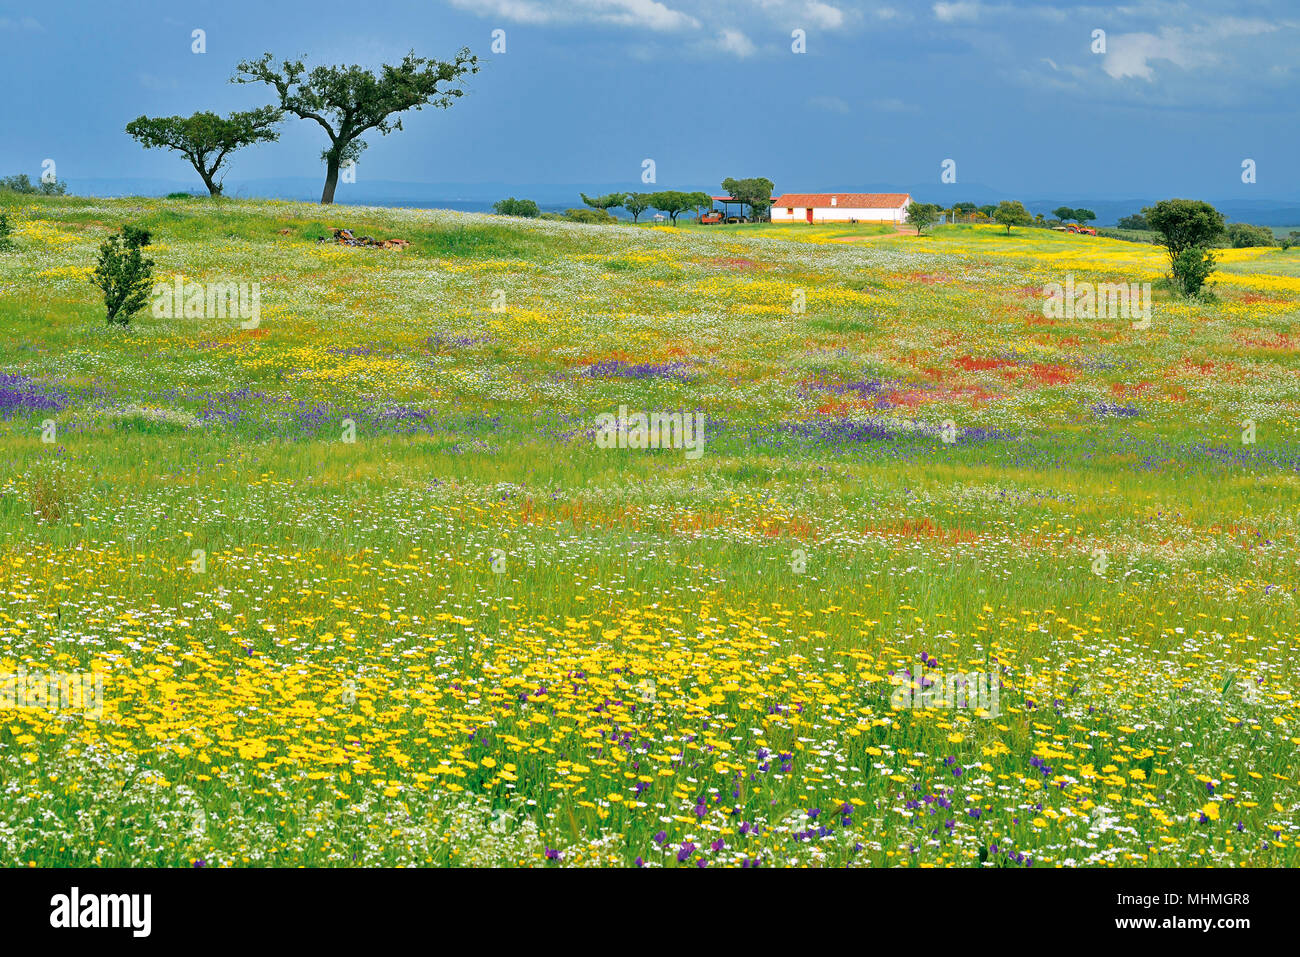 Champ vert recouvert de jaune, bleu et rouge fleurs sauvages entourant une petite maison de ferme blanche au printemps Banque D'Images